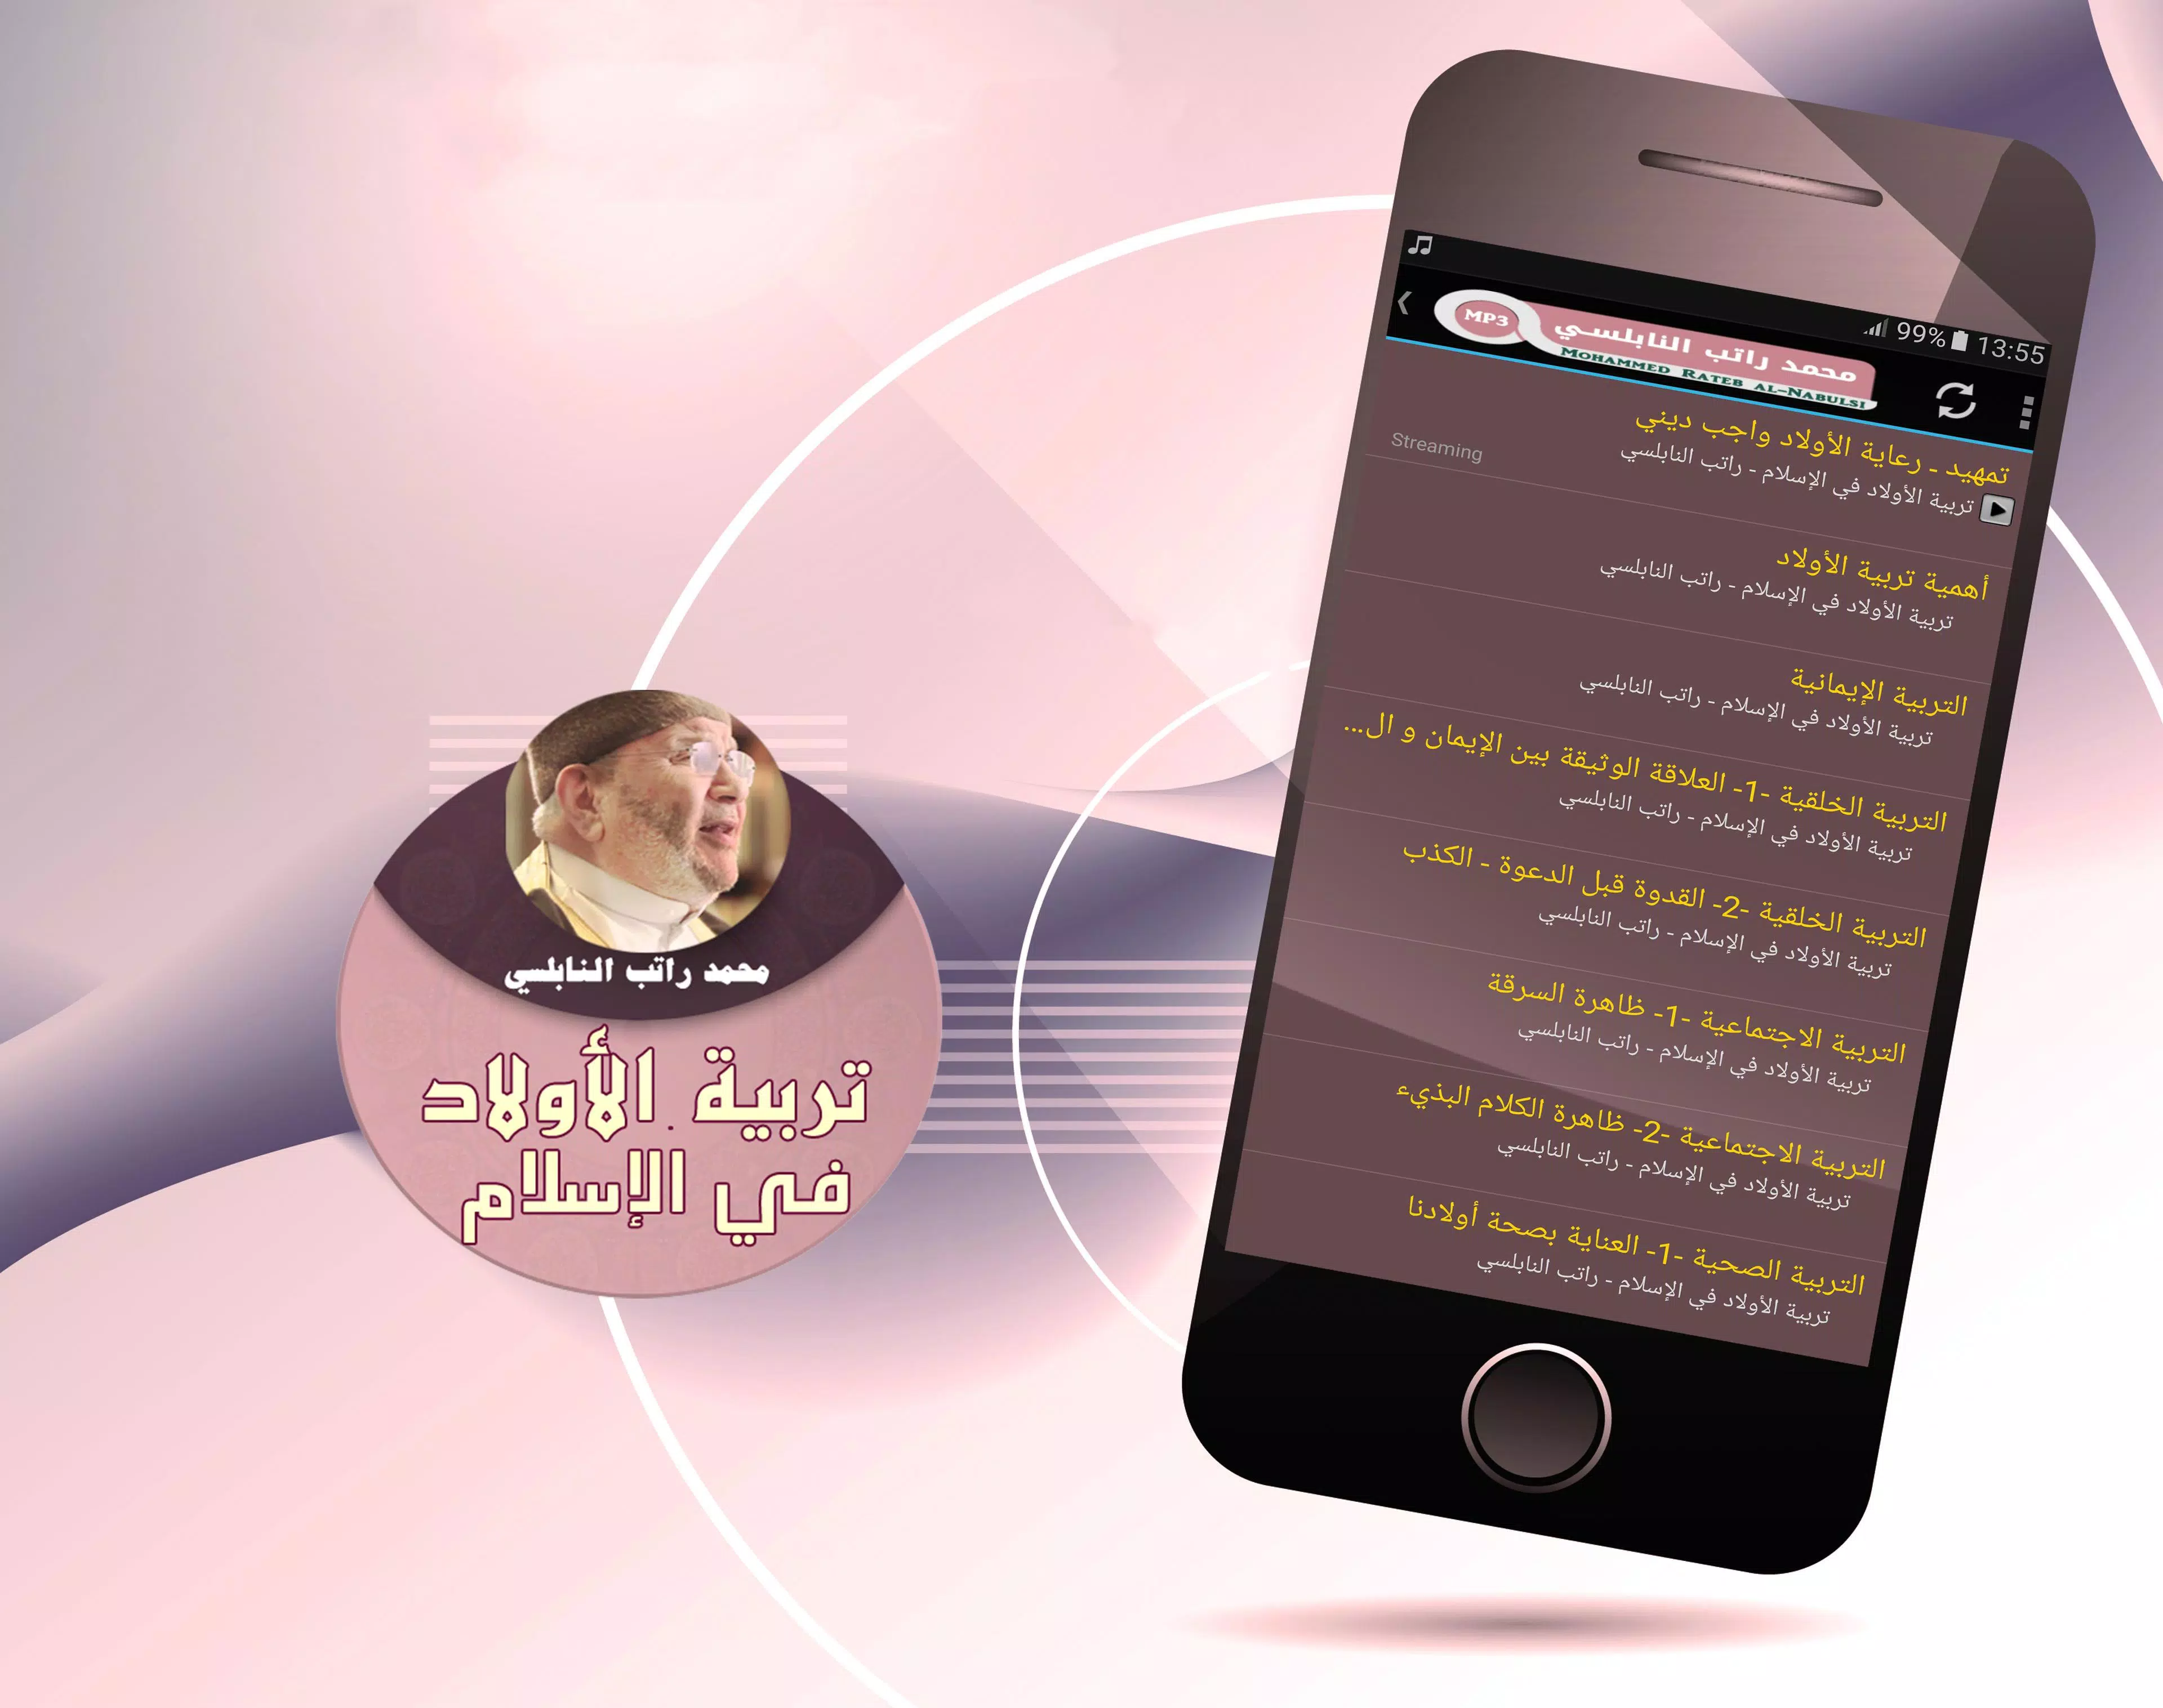 محمد راتب النابلسي - تربية الاولاد في الاسلام for Android - APK Download